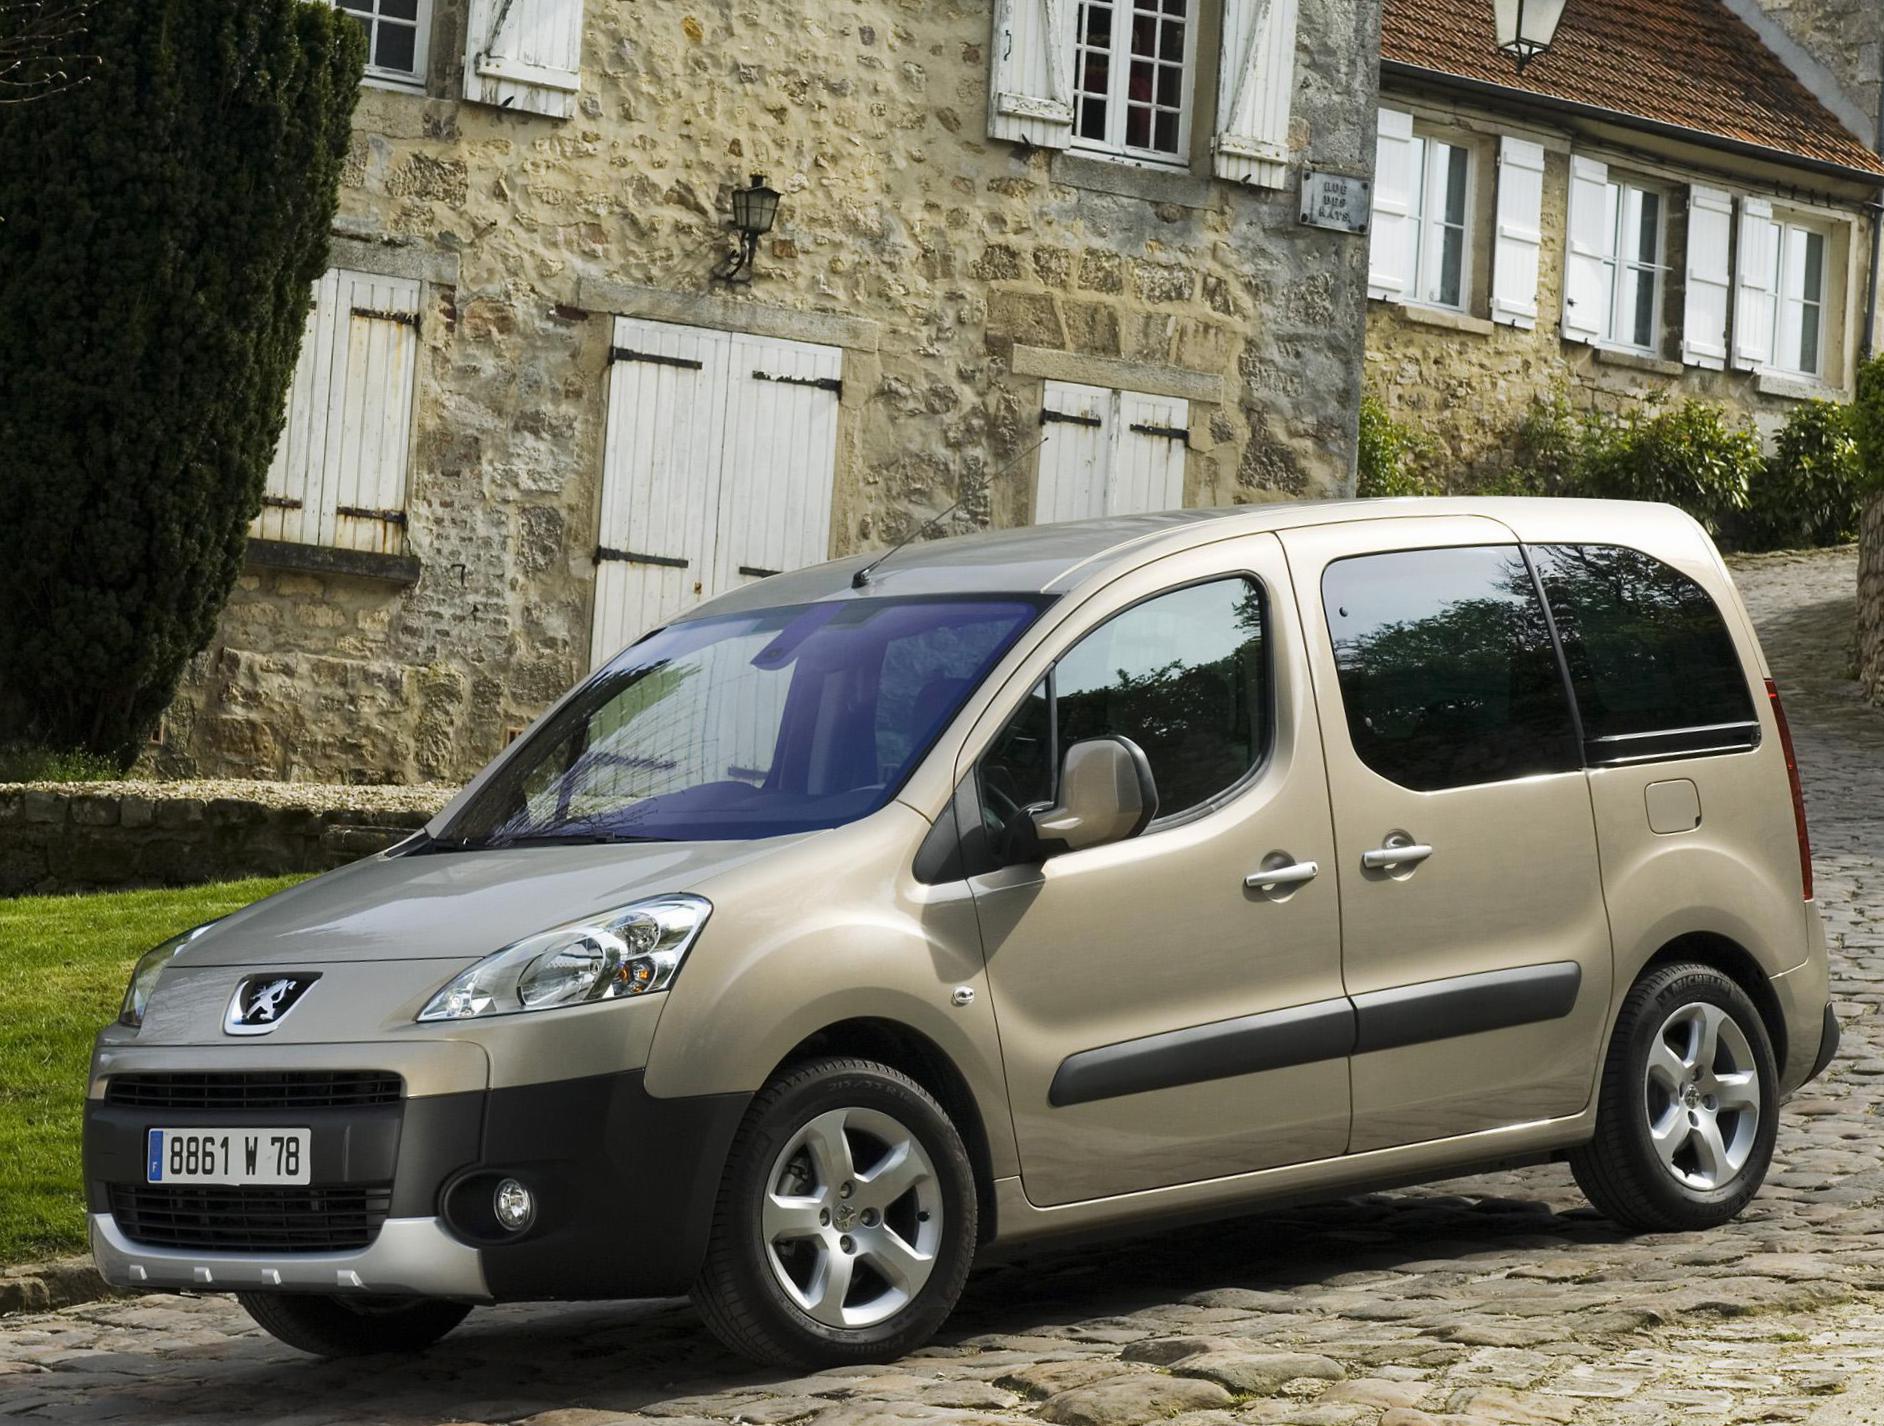 Partner Tepee Peugeot sale liftback